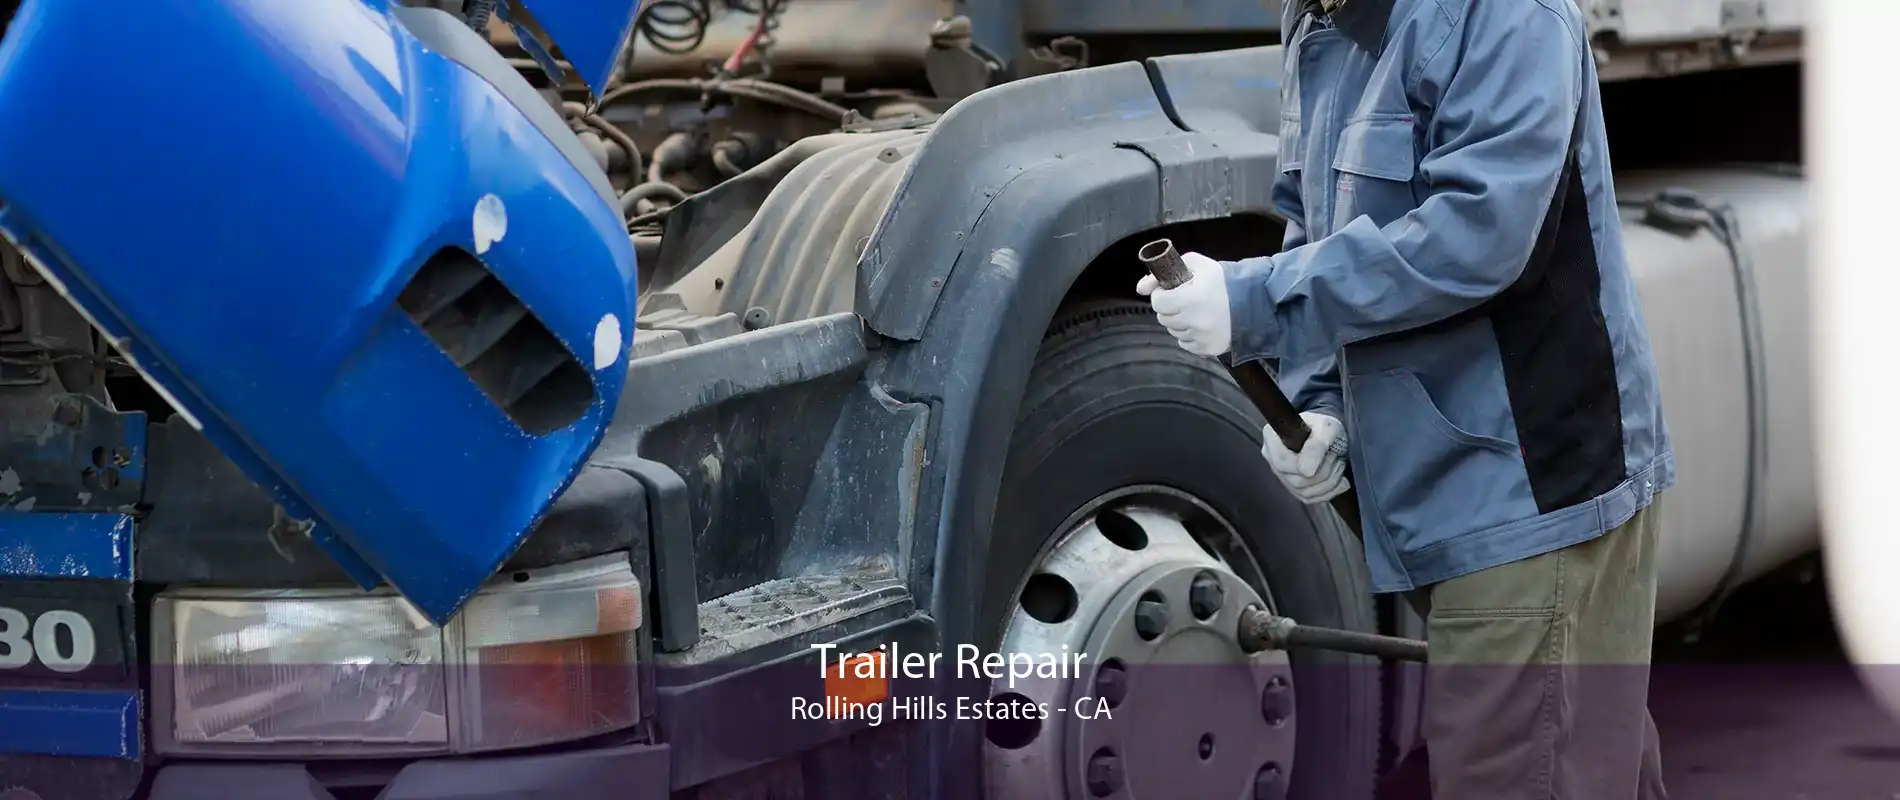 Trailer Repair Rolling Hills Estates - CA